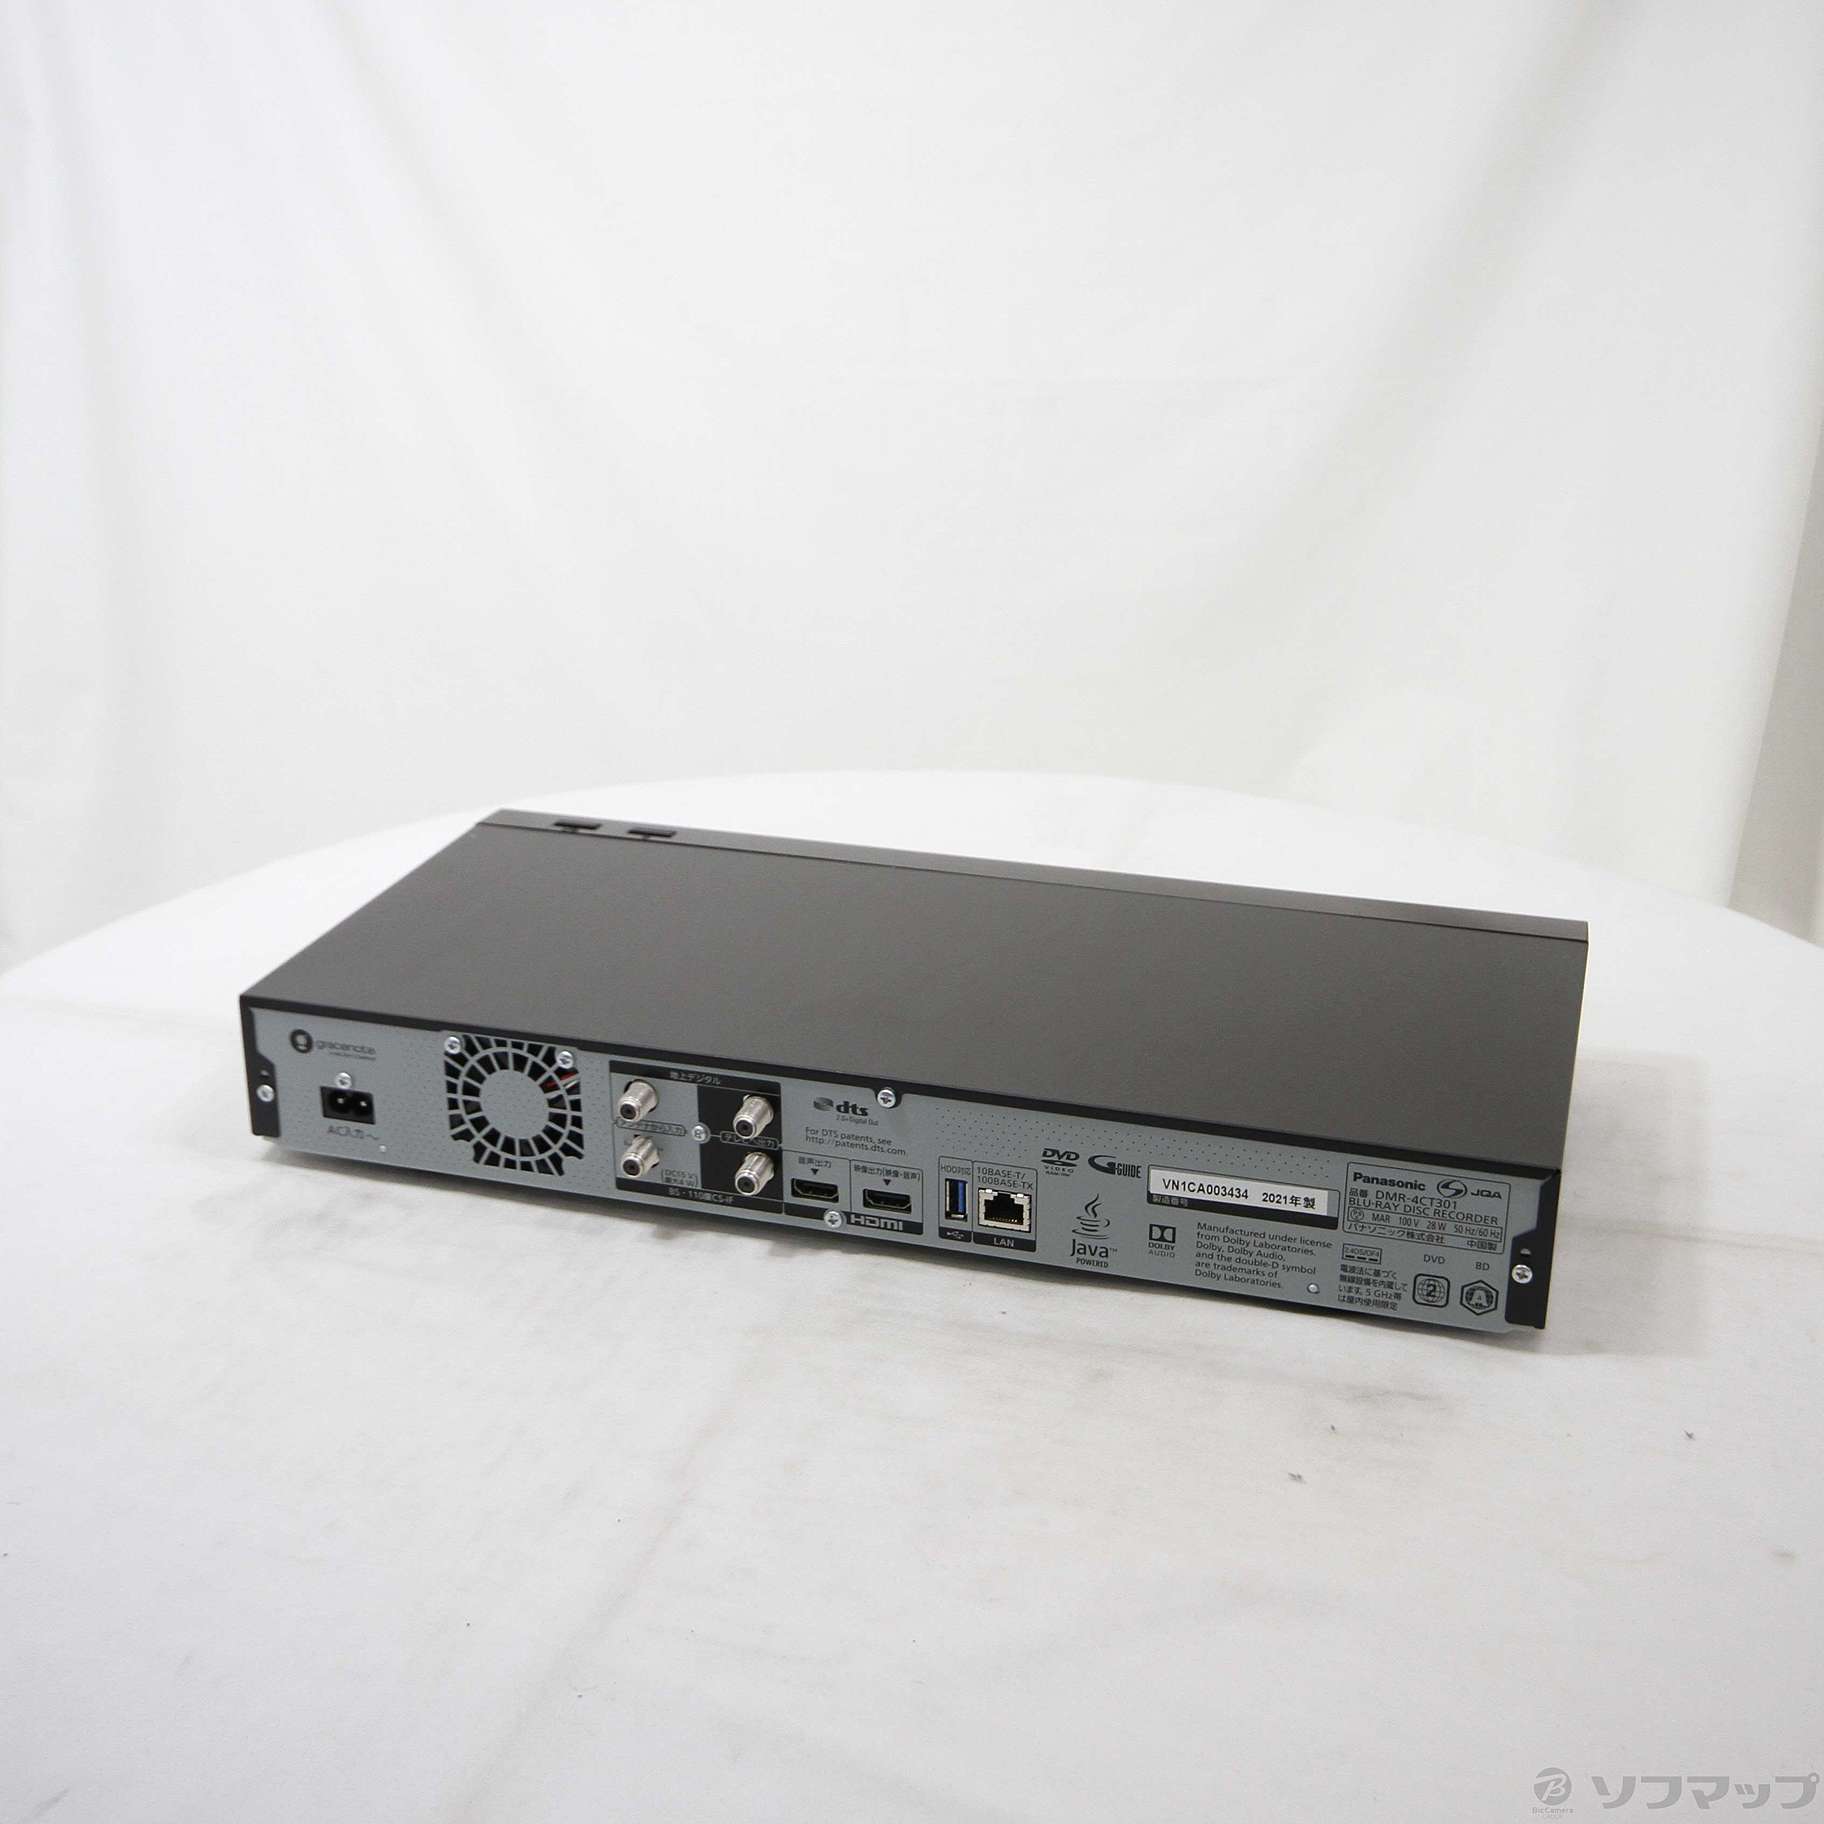 【新品】Panasonic ブルーレイディスクレコーダー DMR-4CT301